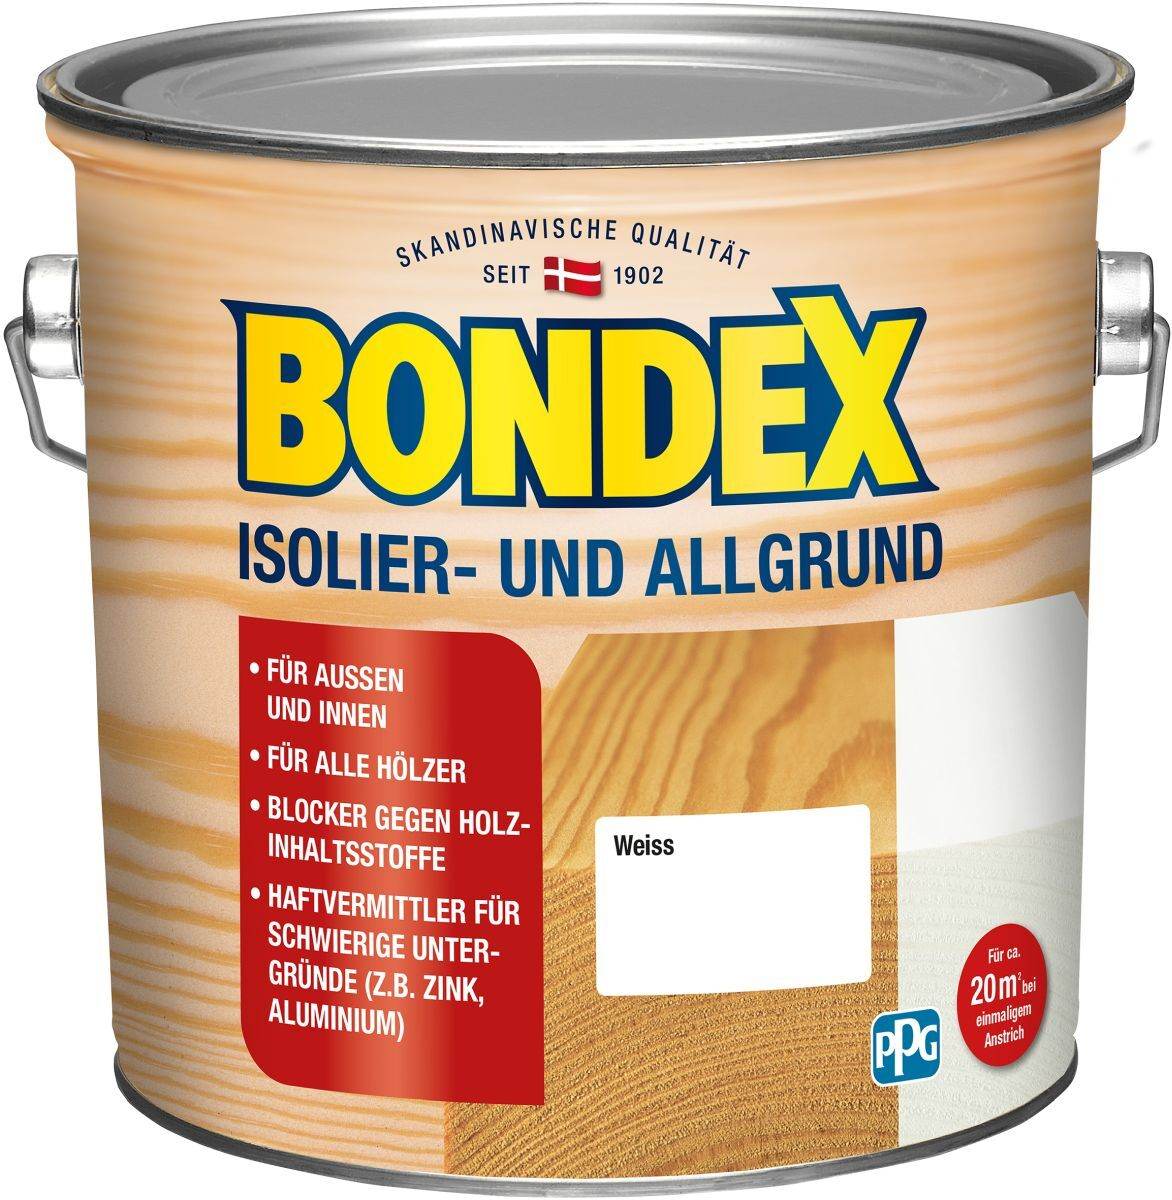 BONDEX Isolier- & Allgrund 2 L in Weiß, wasserbasierter Sperr- und Haftgrund für Innen & Außen